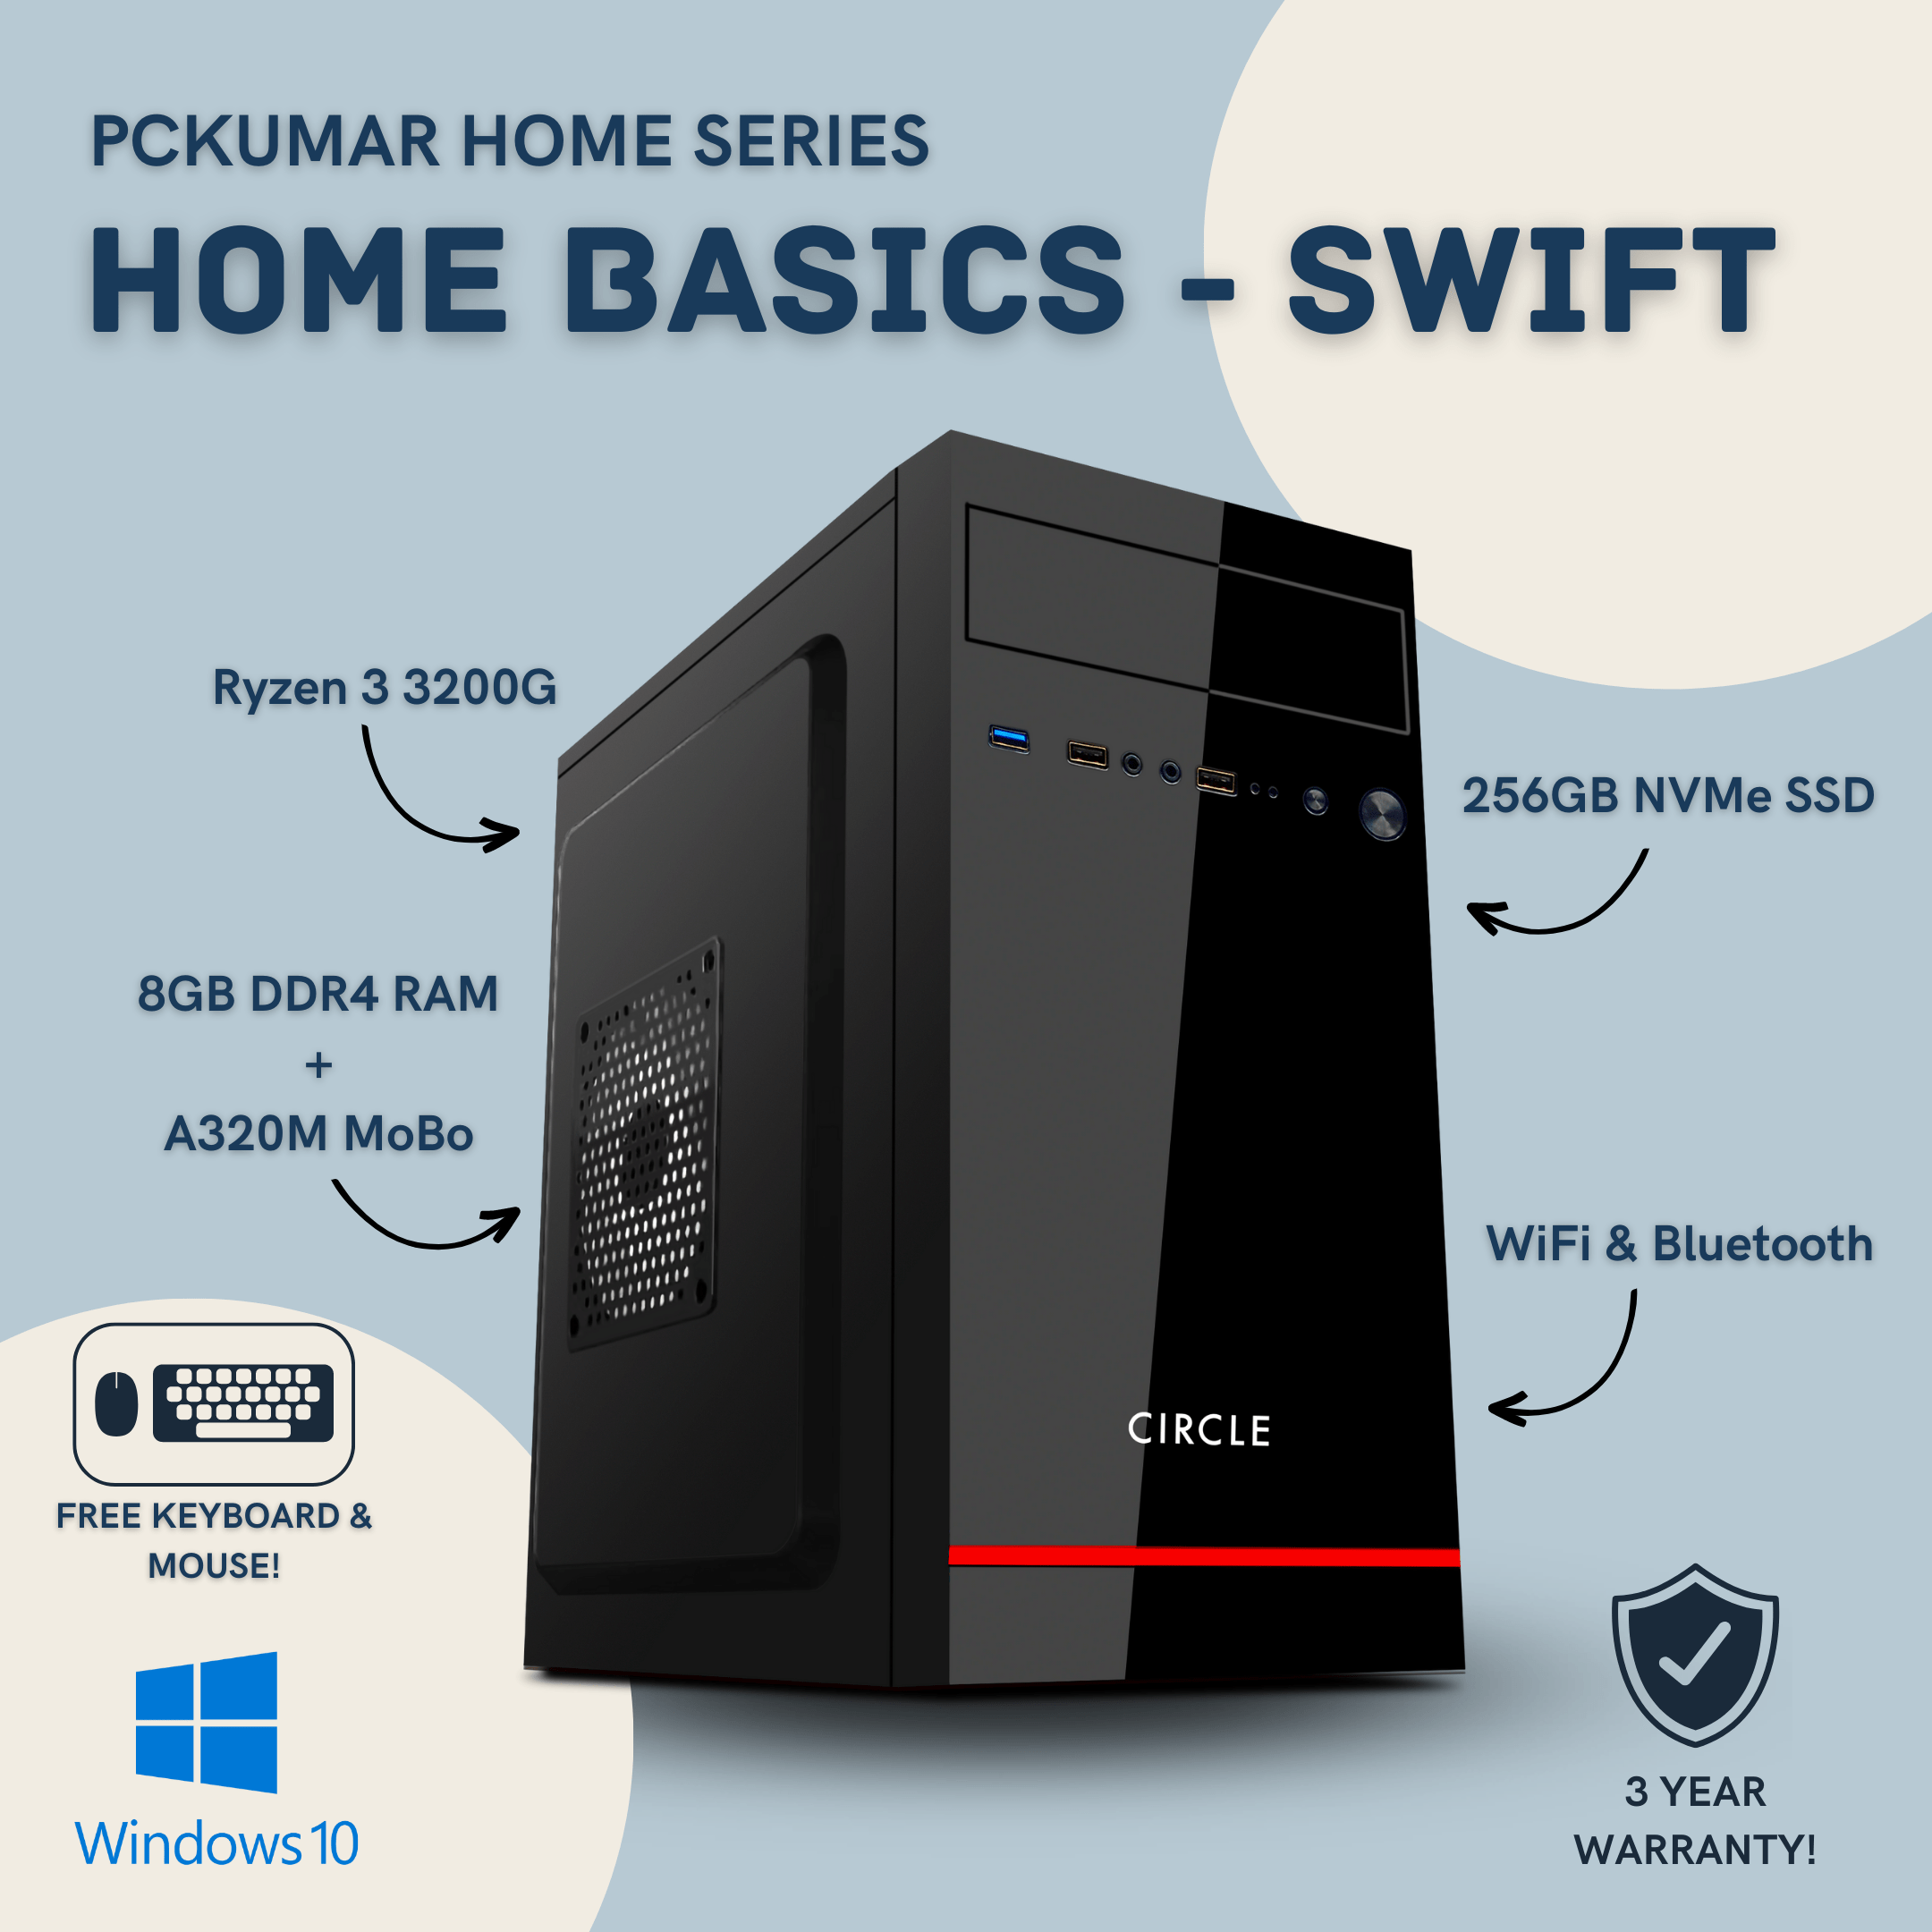 Home Basics Ryzen 3 PC for 21499/-